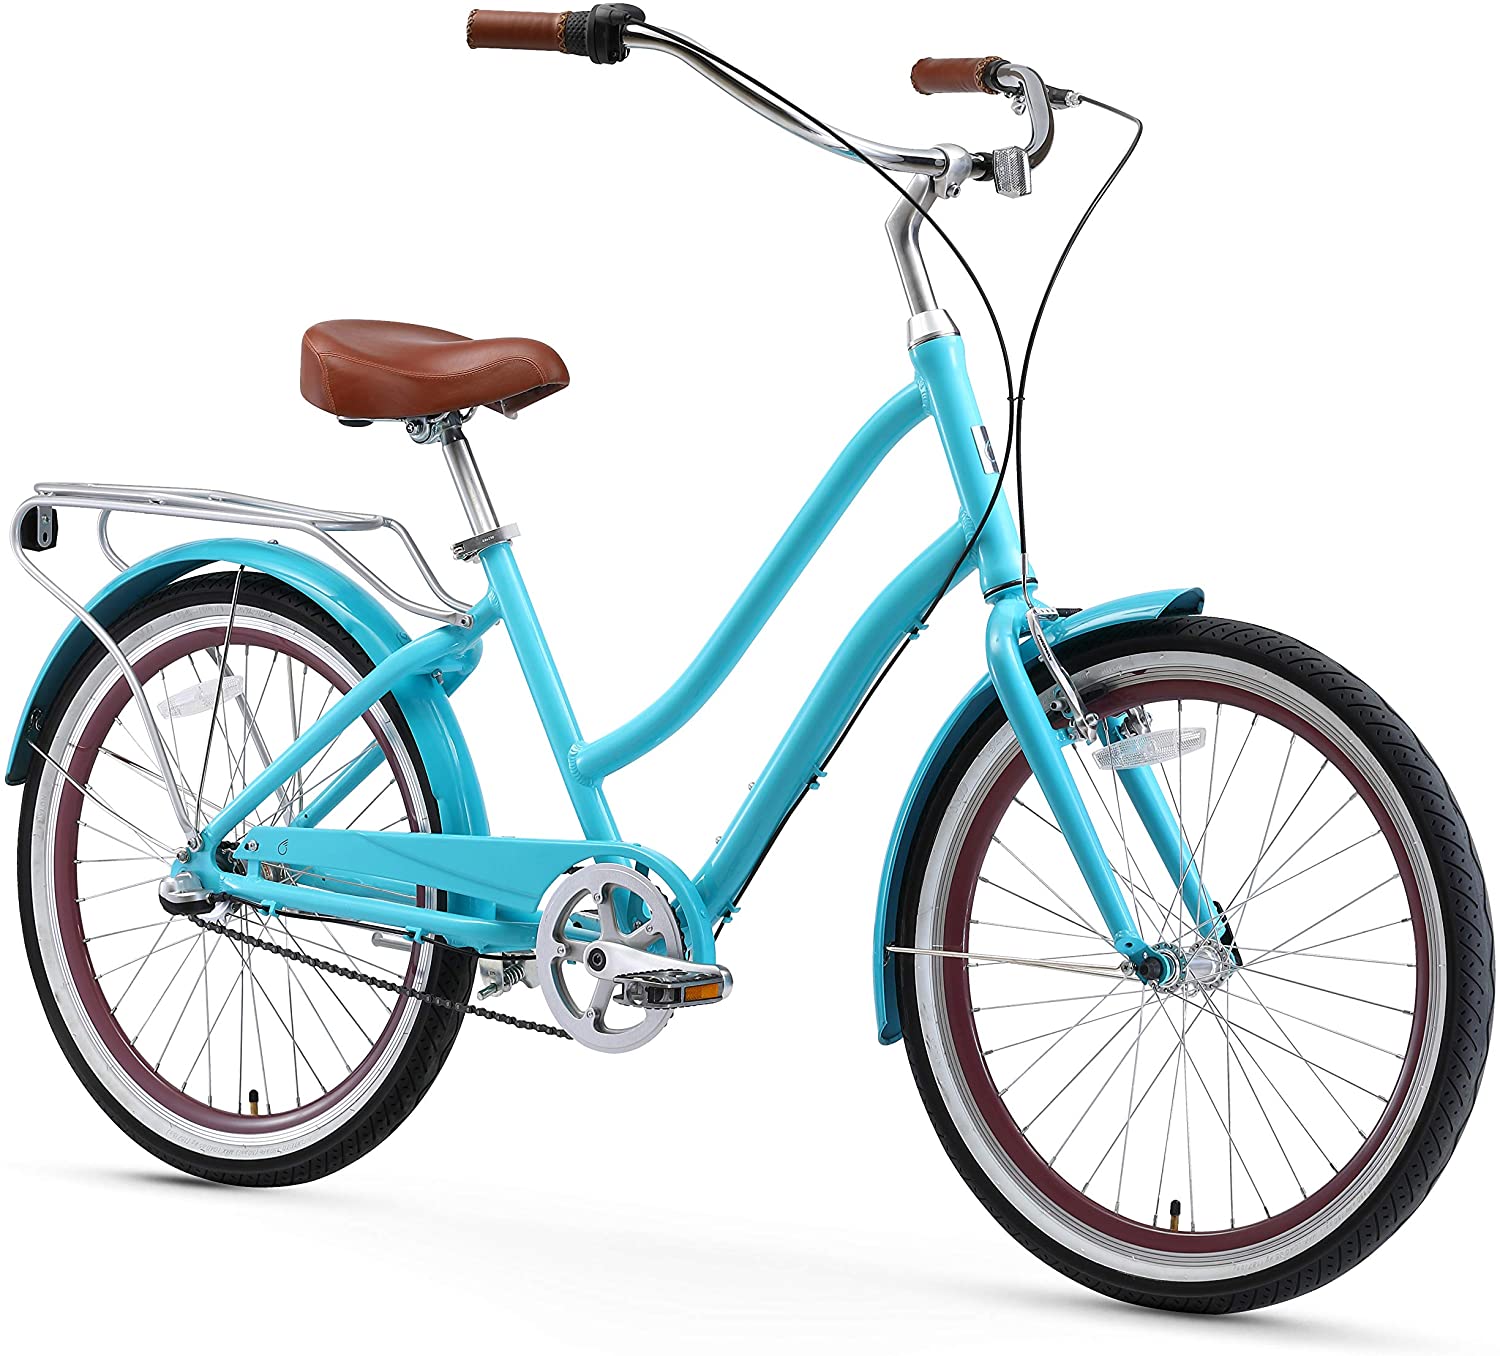 Sixthreezero Women’s Hybrid Bicycle